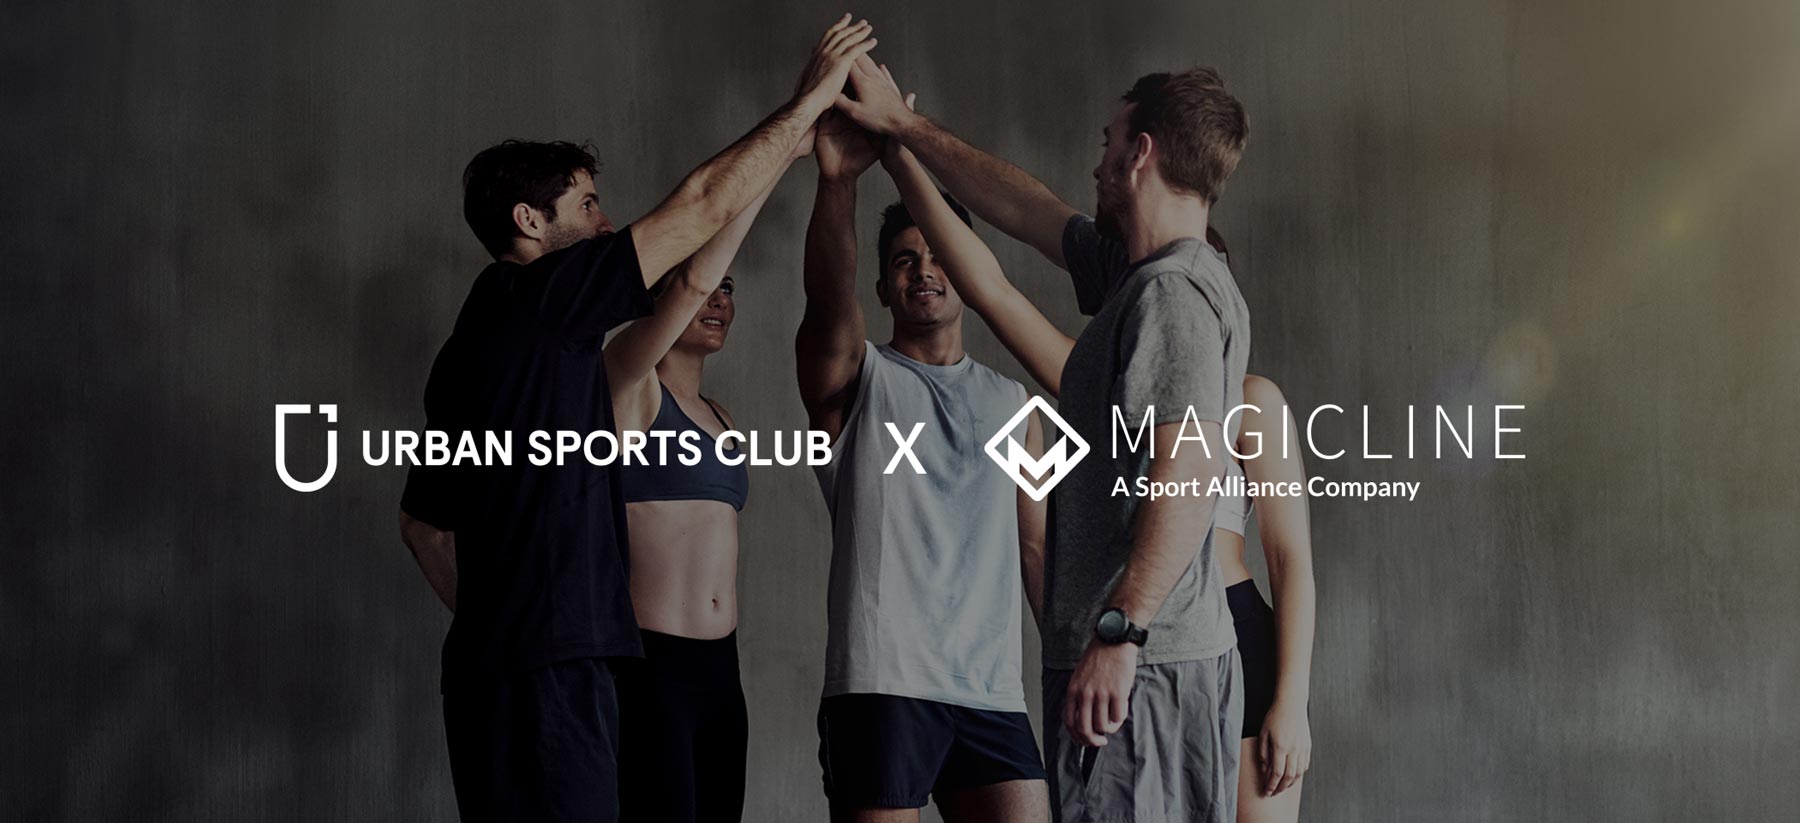 Testphase erfolgreich gestartet: Magicline und Urban Sports Club beschließen globale Partnerschaft